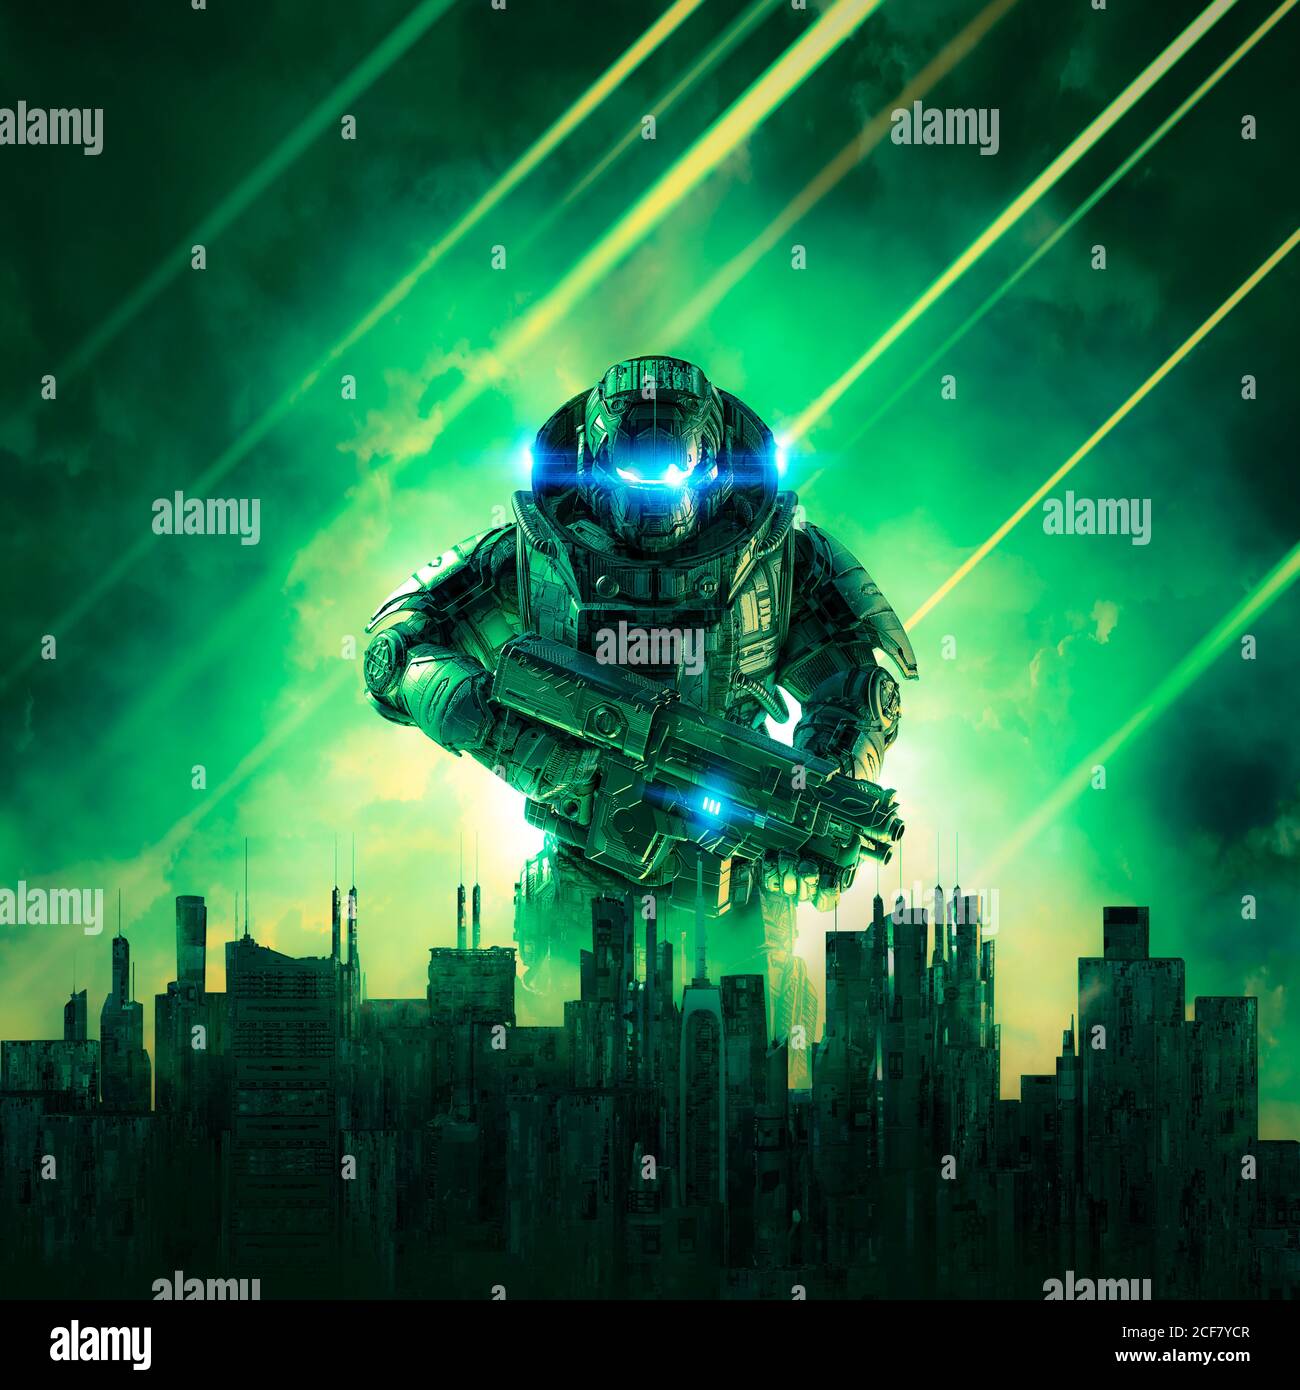 Cyber-punk soldat ville en état de siège / 3D illustration de la science un robot guerrier militaire de fiction s'élevant au-dessus d'un horizon dystopique futuriste Banque D'Images